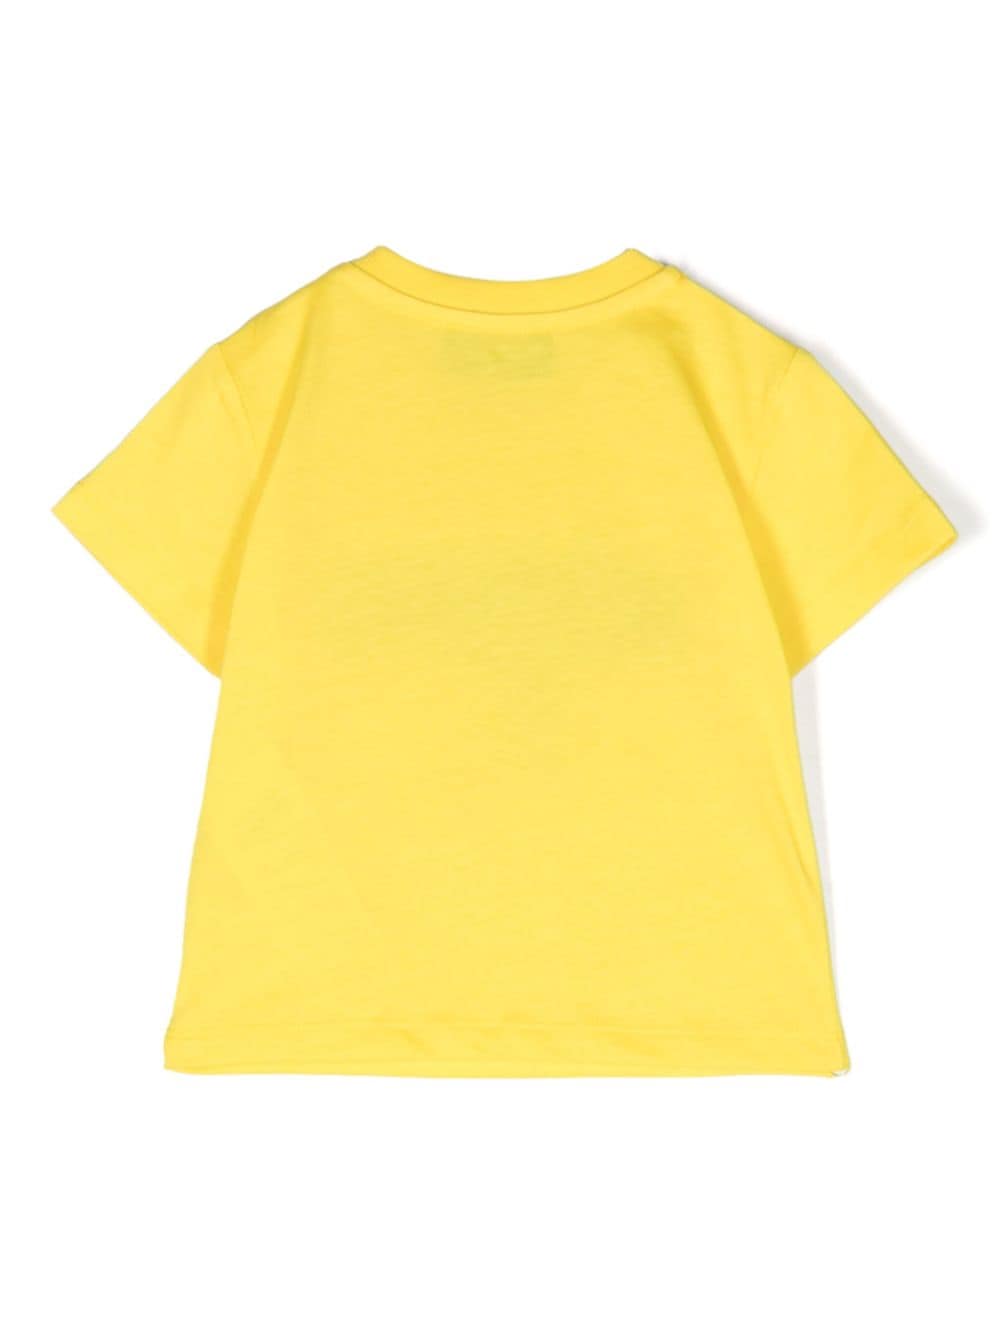 T-shirt jaune nouveau-né